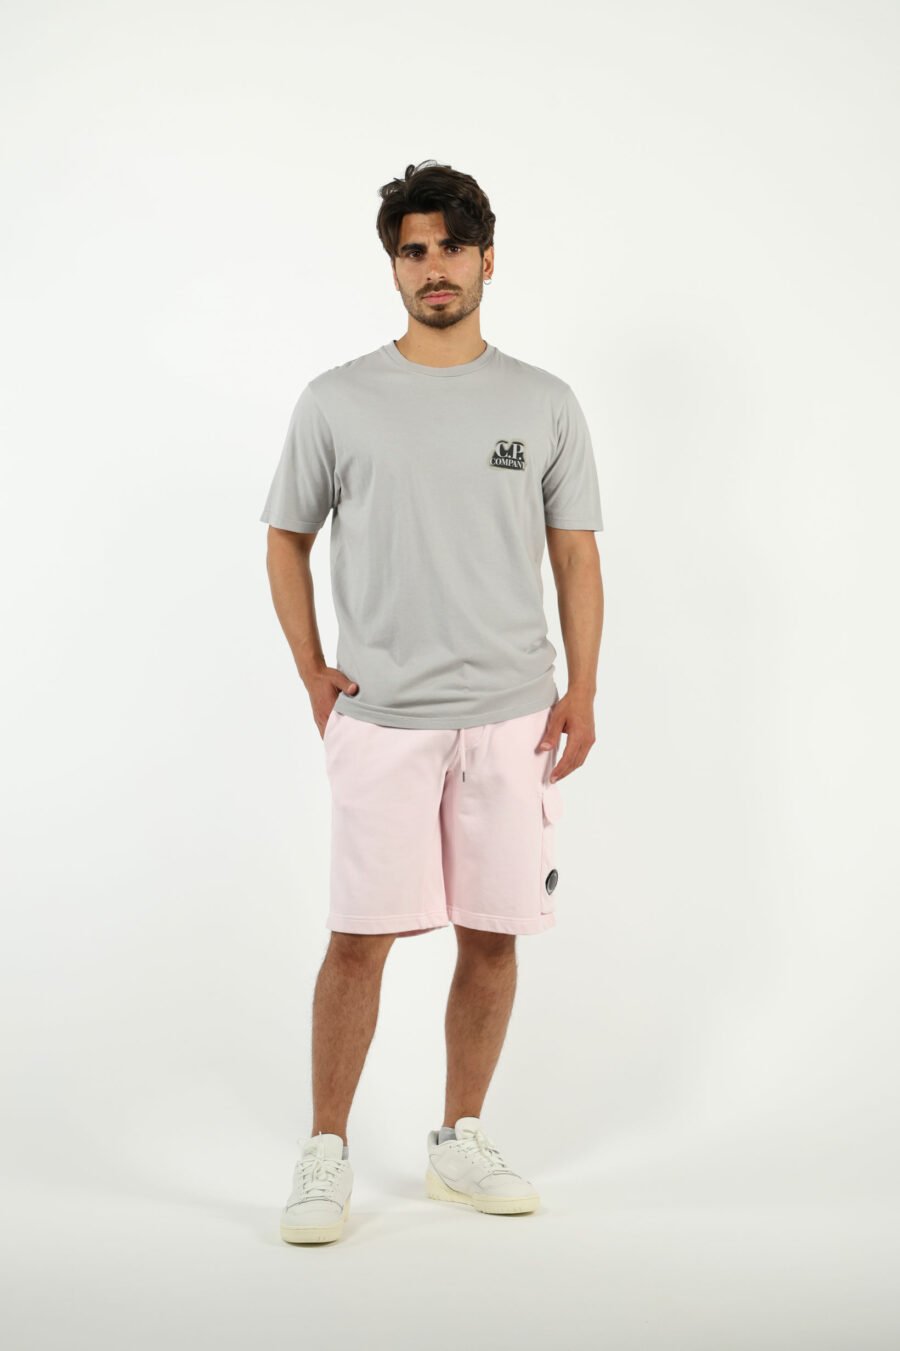 Pantalón de chándal midi rosa estilo cargo con minilogo lente - number13455